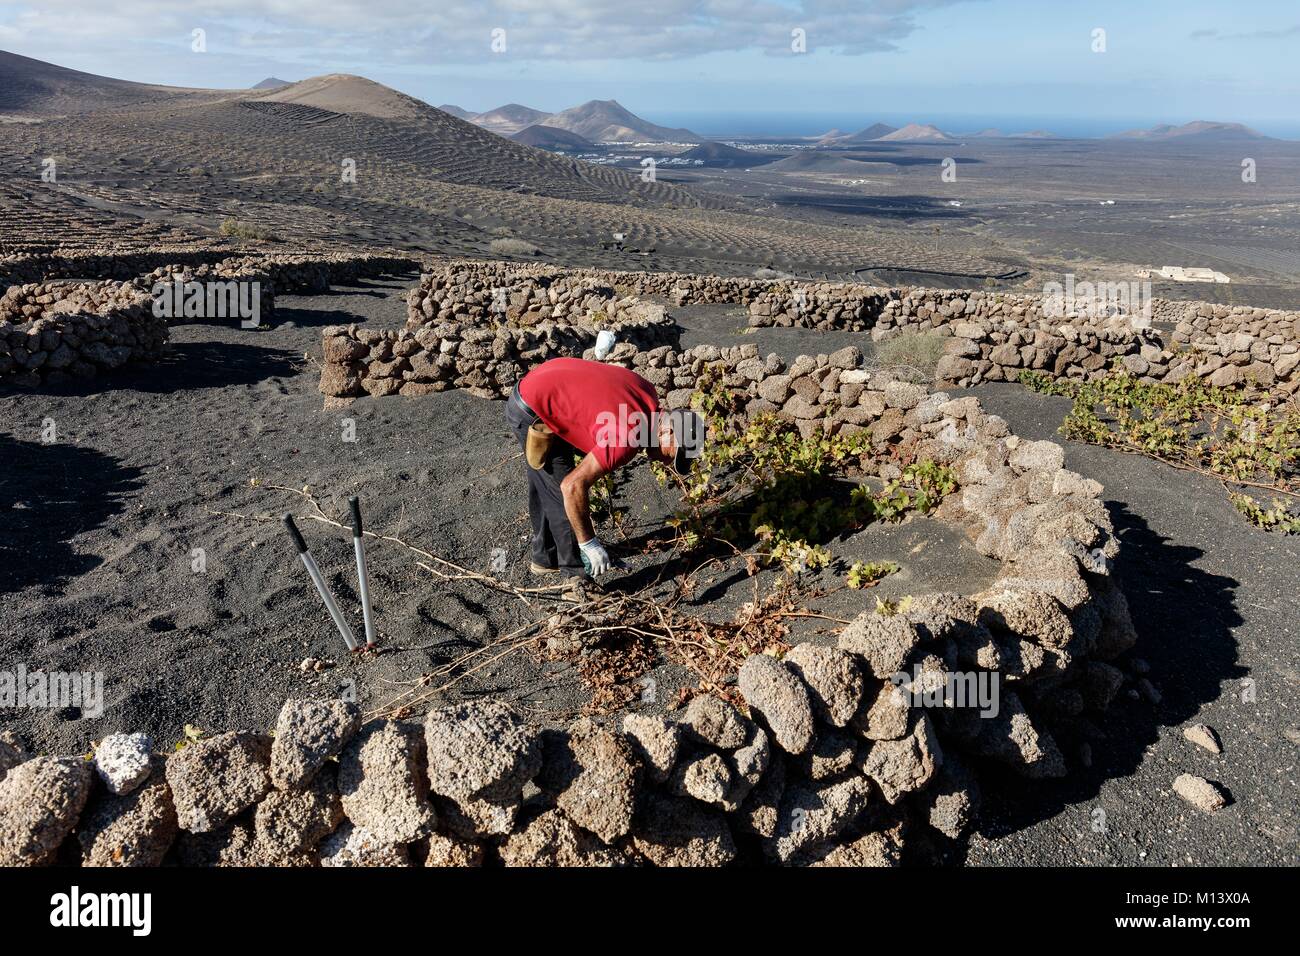 Espagne, Canaries, l'île de Lanzarote, La Geria, vigneron taillant la vigne protégés par des murs bas en pierre de sable volcanique (lapilli) avant les volcans Banque D'Images